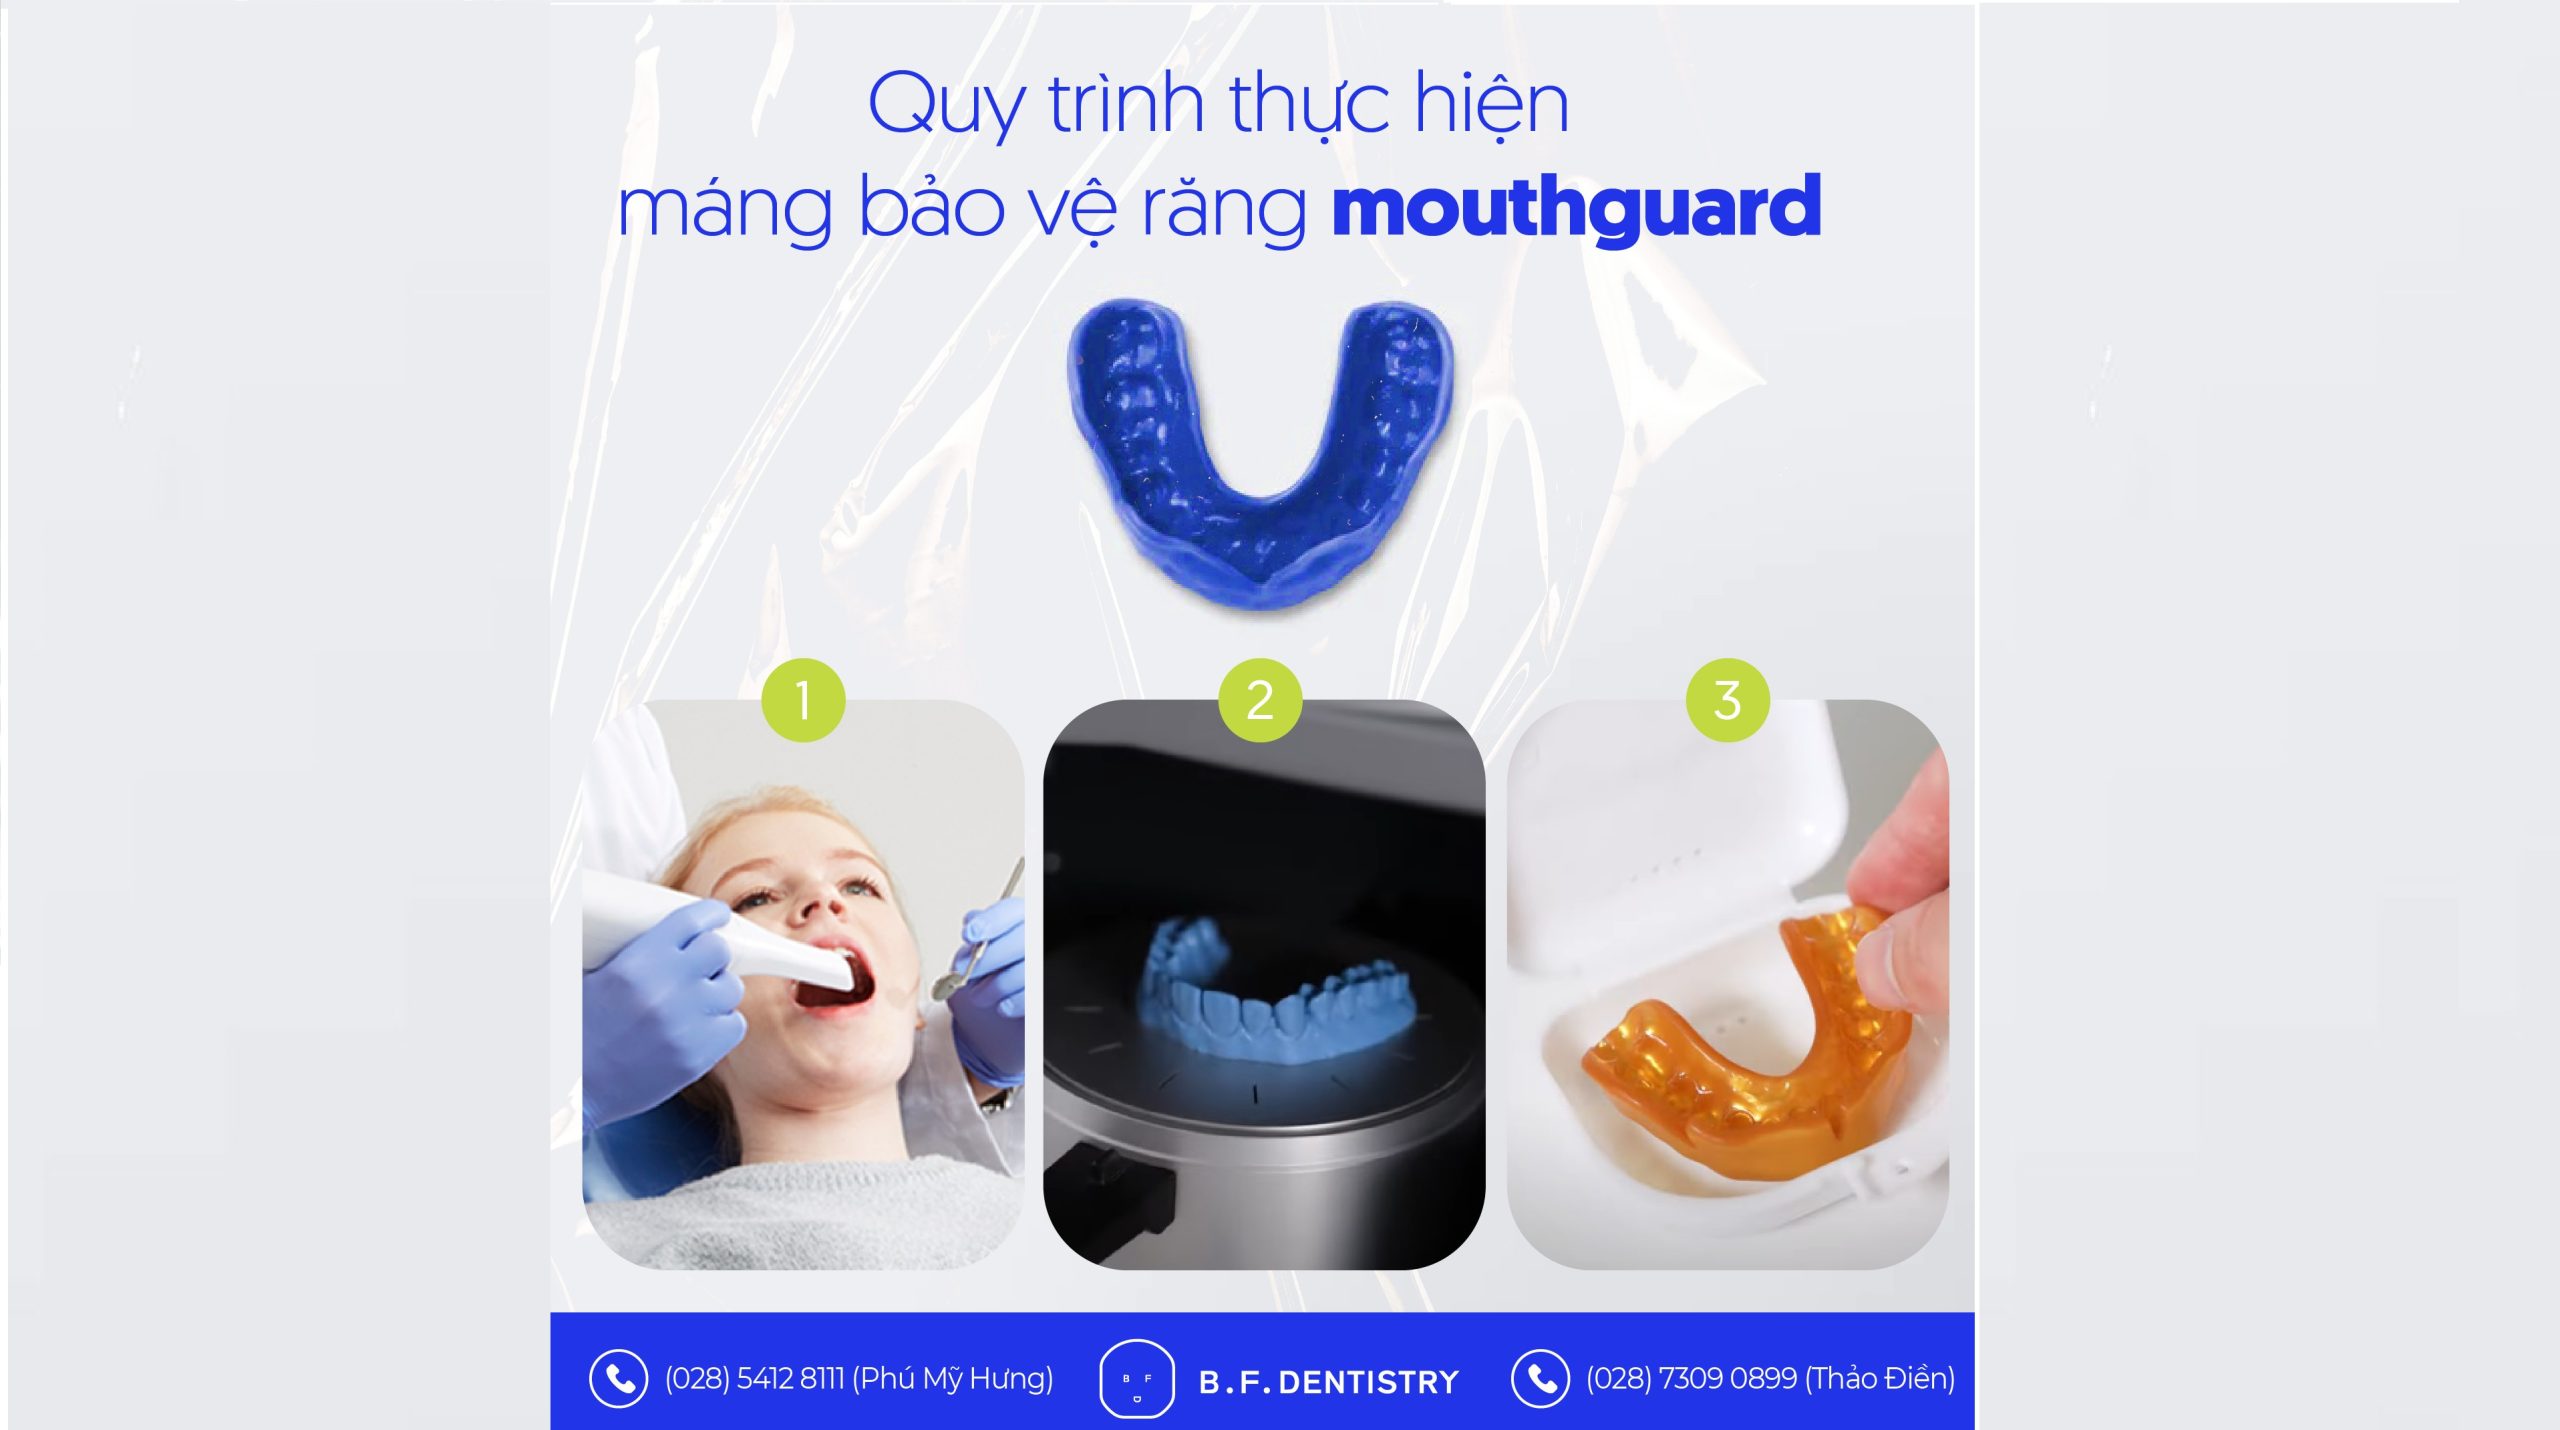 Quy trình thực hiện máng bảo vệ răng mouthguard